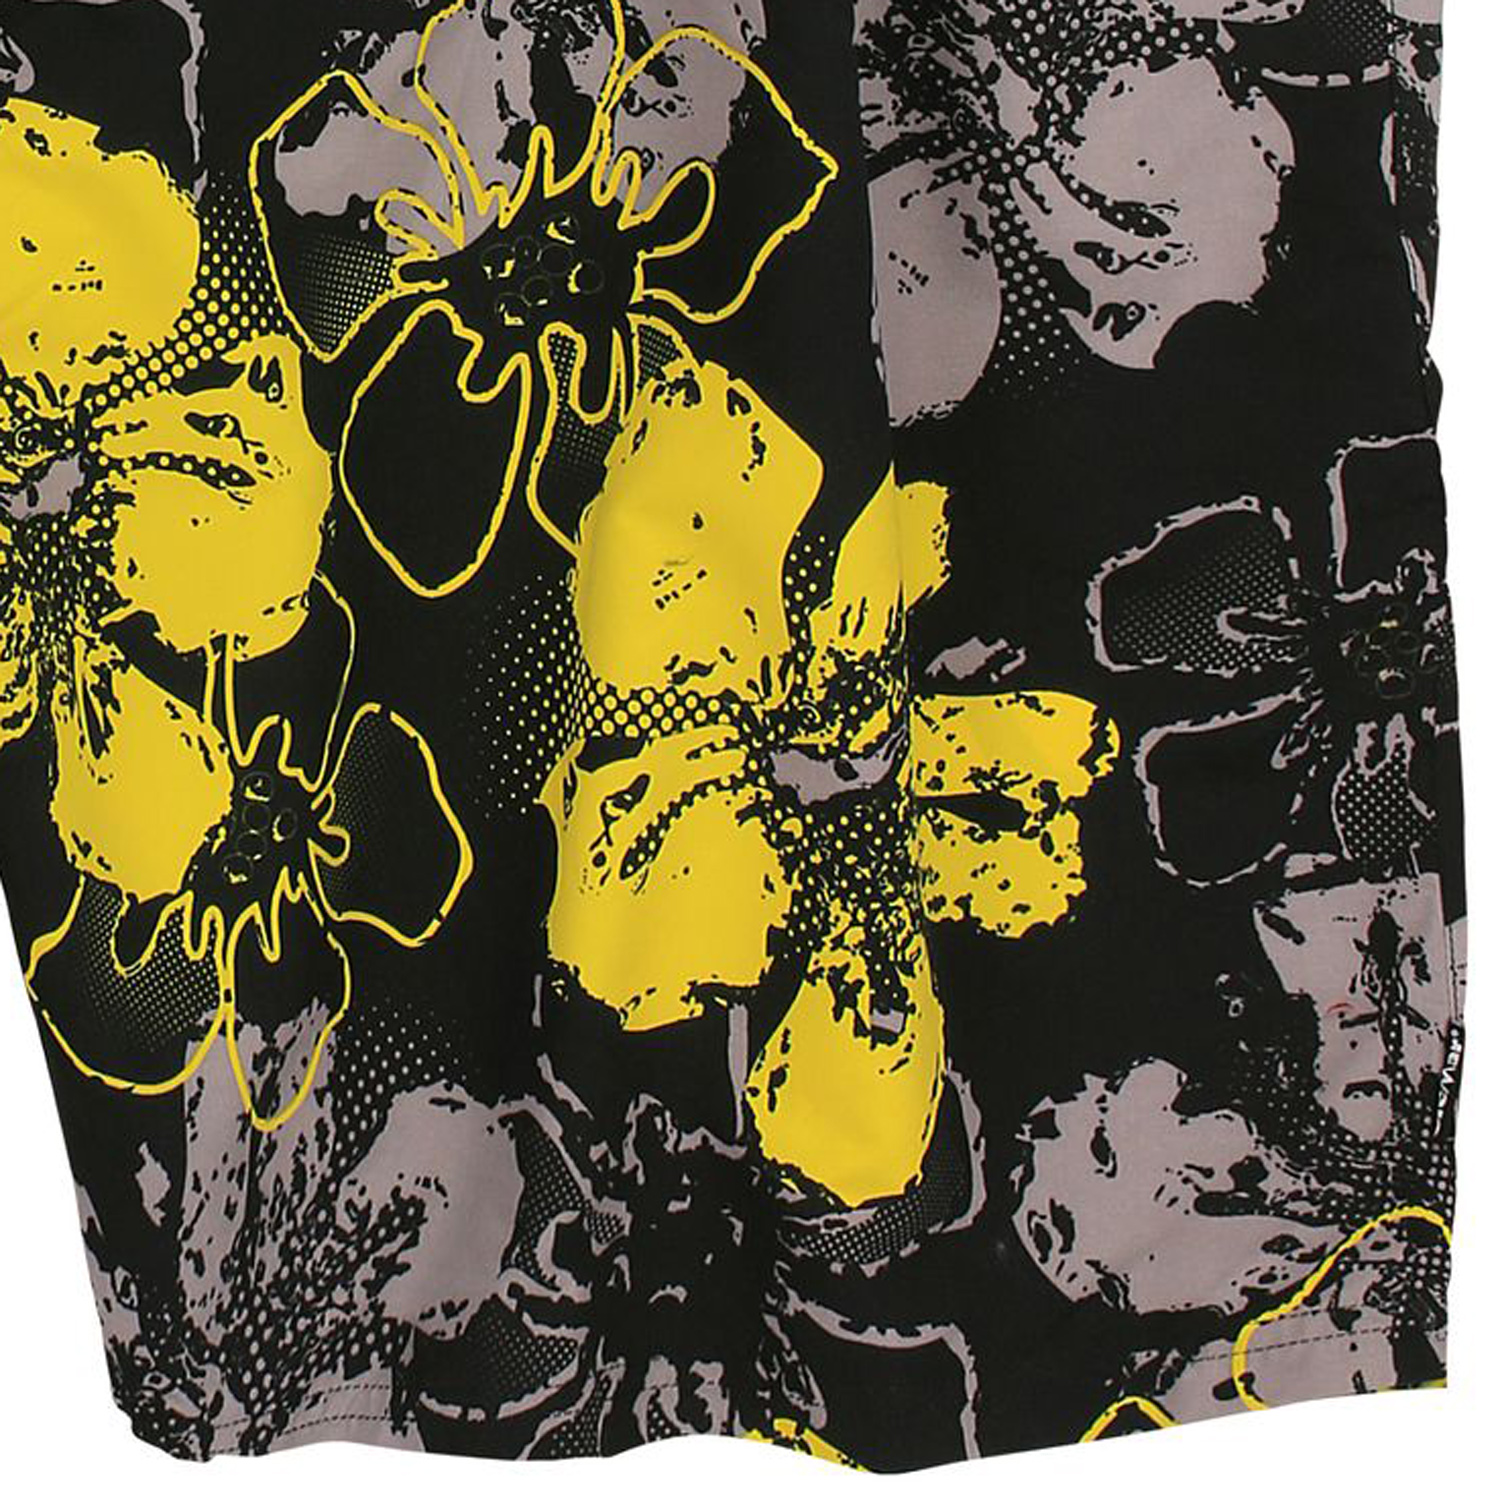 Badeshort Bade-Bermuda von elemar in großen Größen in 9XL 10XL mehrfarbig in schwarz-gelb-grau mit Blumenmuster für Männer